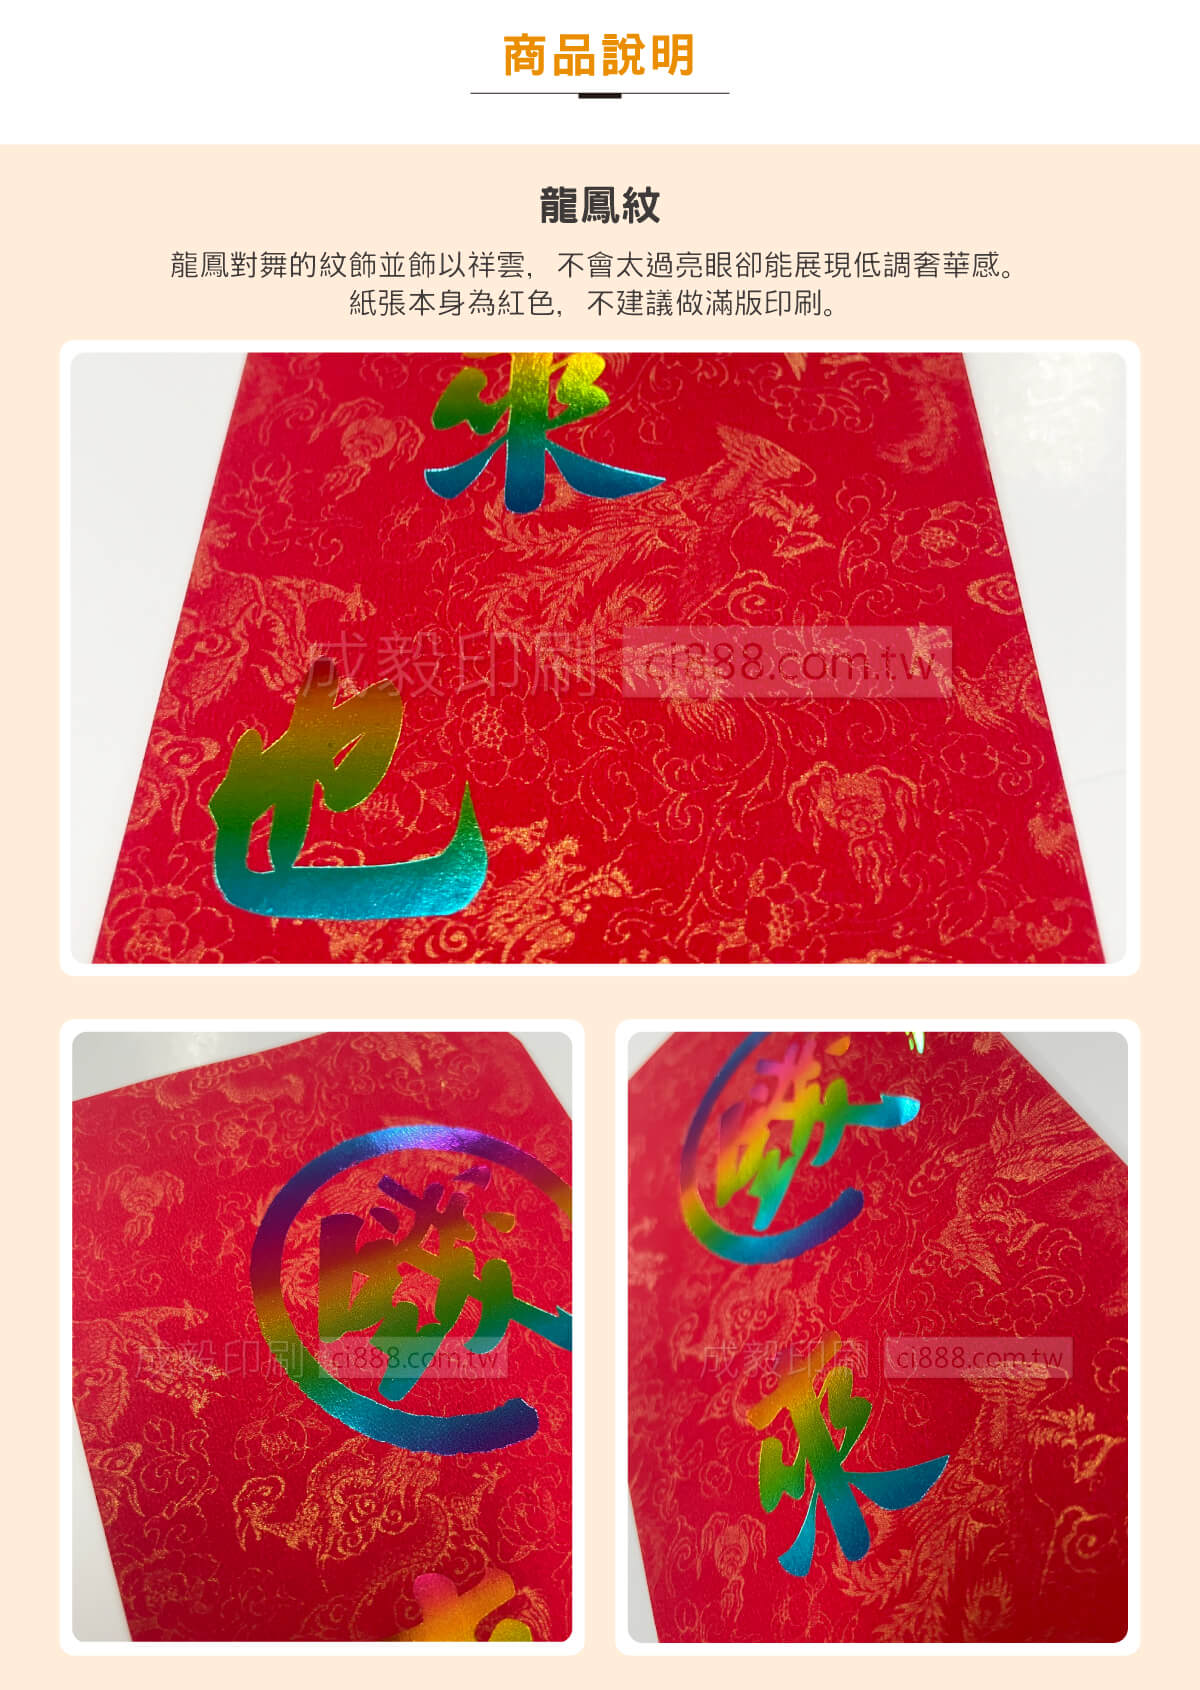 紅包袋 中式紅包 禮金袋 獎金袋 抽獎包 燙金紅包袋 龍鳳紋 客製化印刷 設計印刷 高雄印刷 